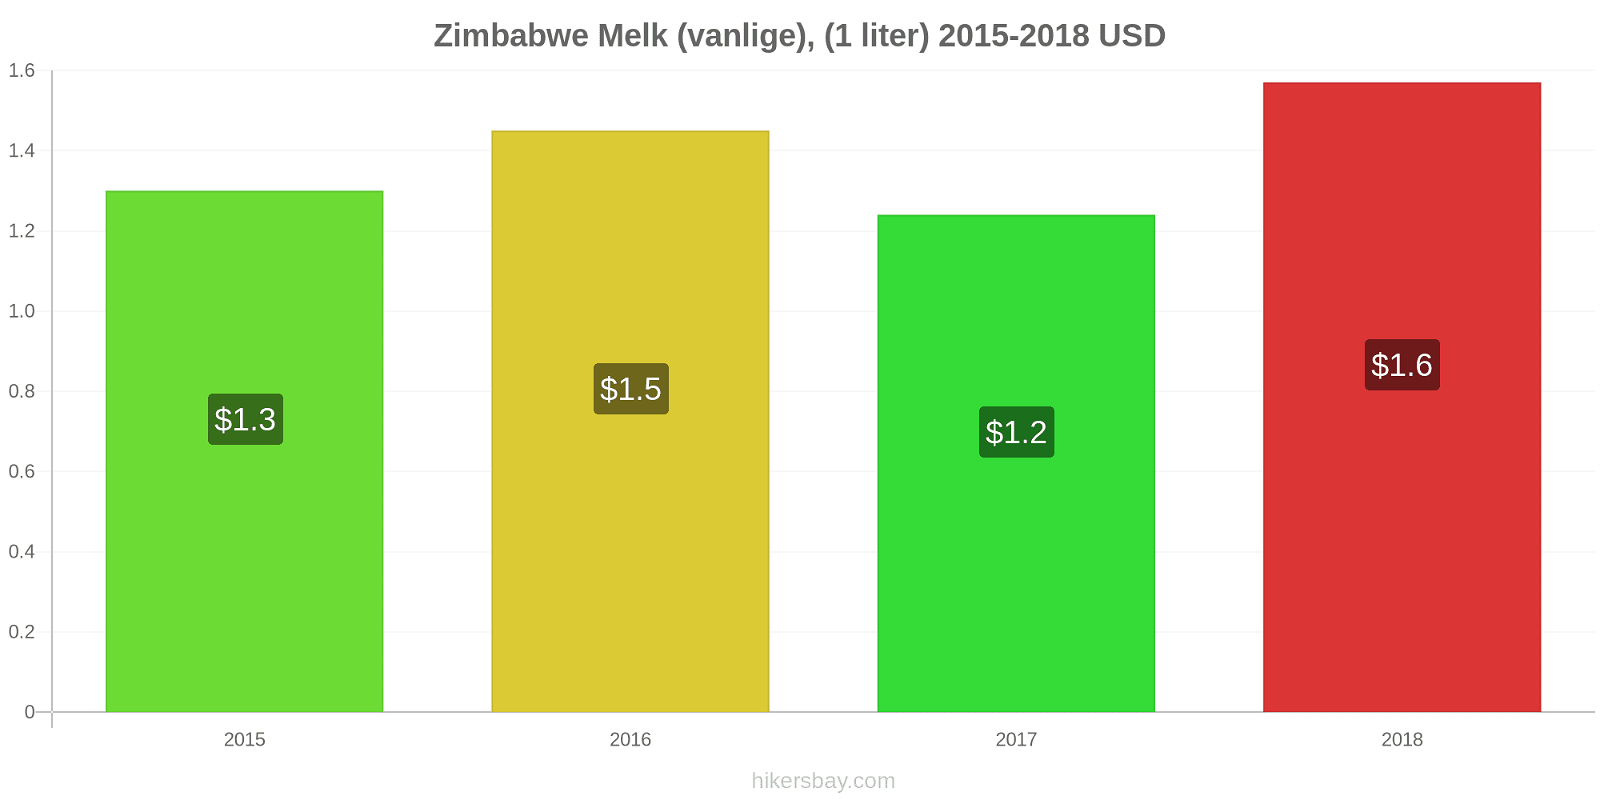 Zimbabwe prisendringer Melk (vanlige), (1 liter) hikersbay.com